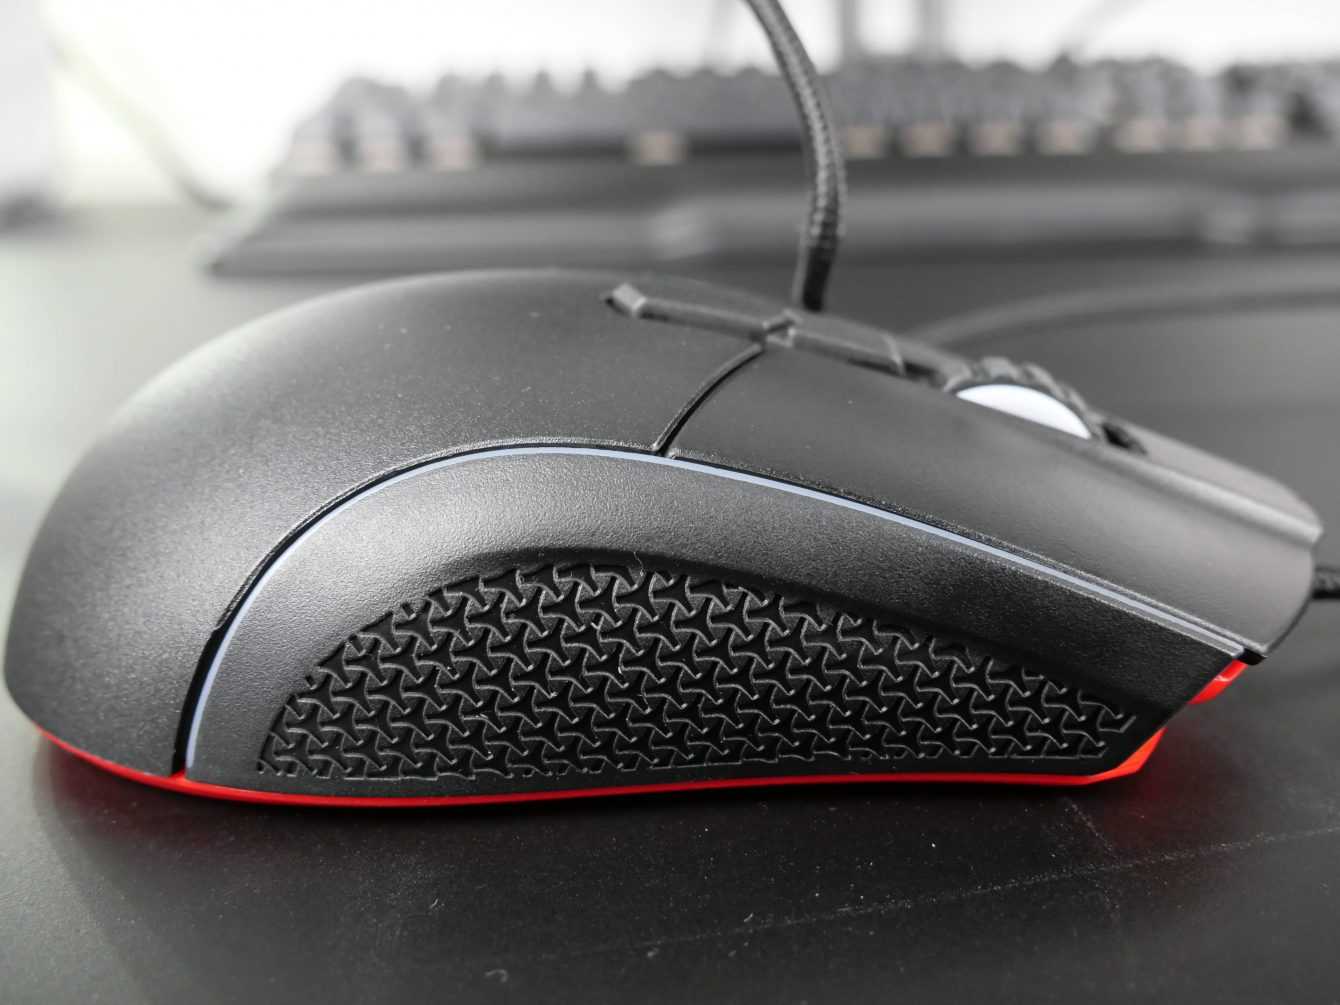 Recensione XPG PRIMER: il mouse da gaming secondo XPG